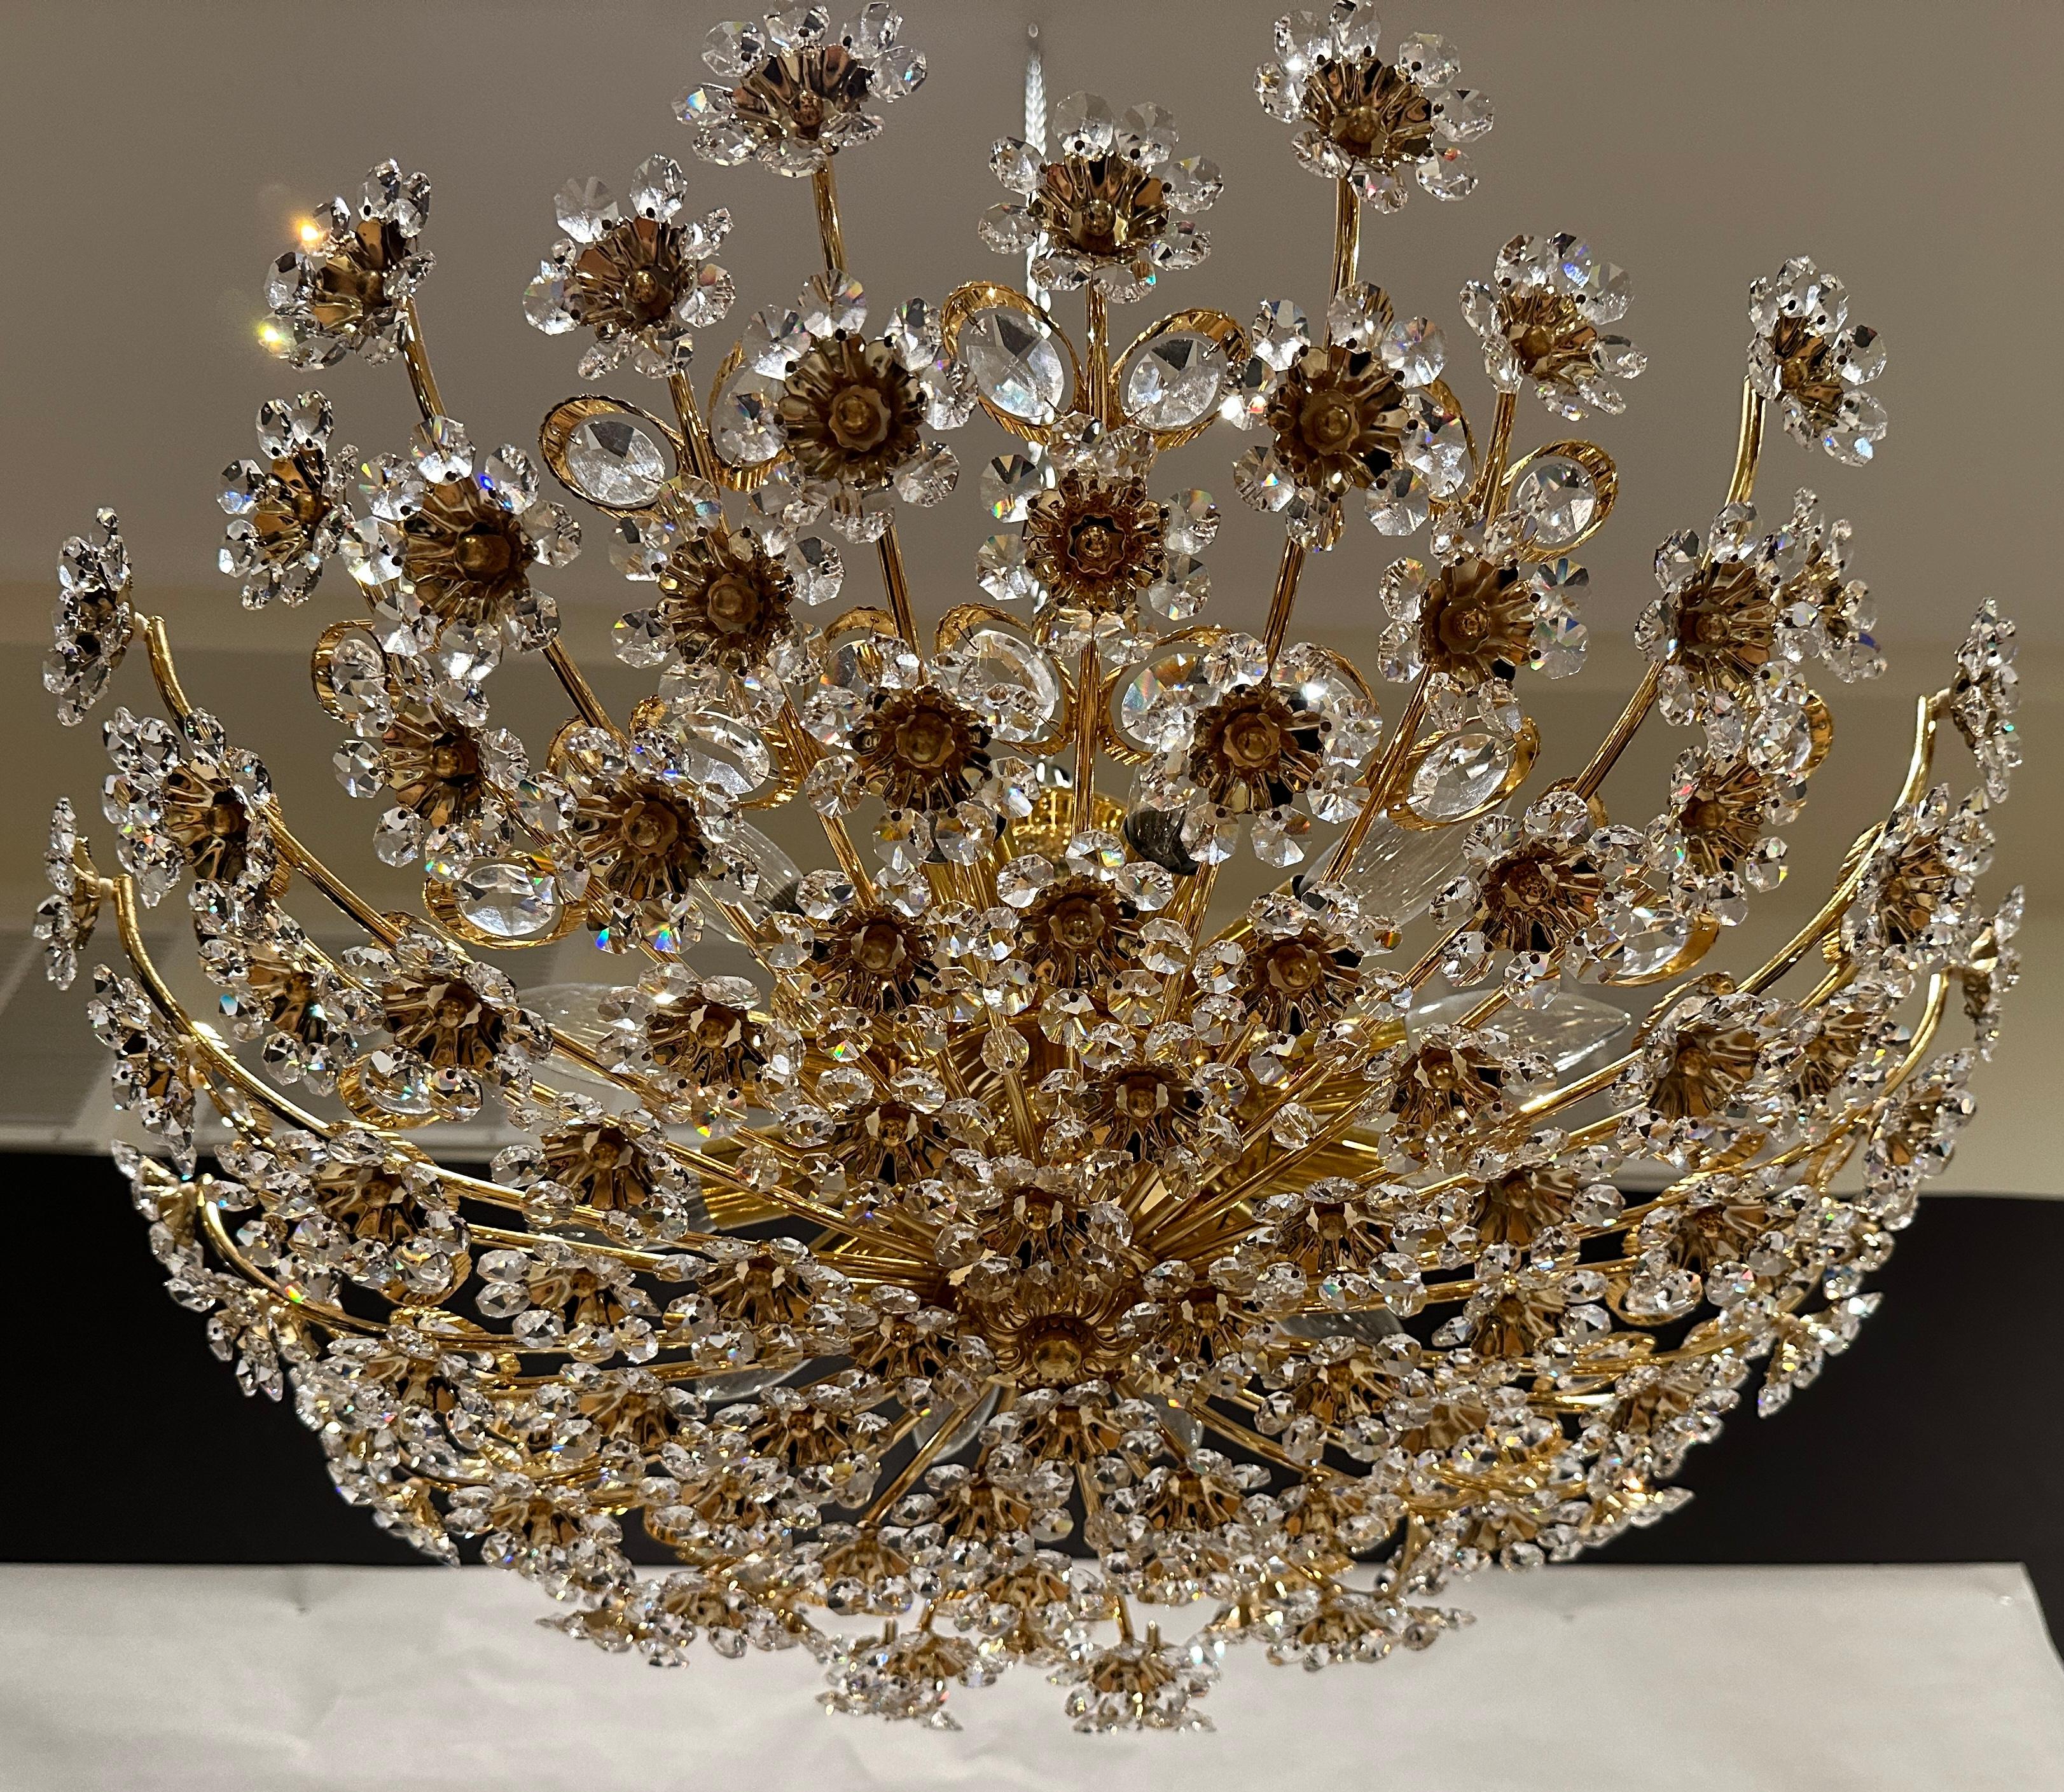 Grand lustre rond de qualité en laiton doré, métal, verre de cristal, fleuri, encastré, fabriqué par Palwa, Allemagne, vers 1960-1970. 12 lumières. Ce superbe plafonnier est composé de nombreux cristaux facettés taillés à la main en forme de fleurs